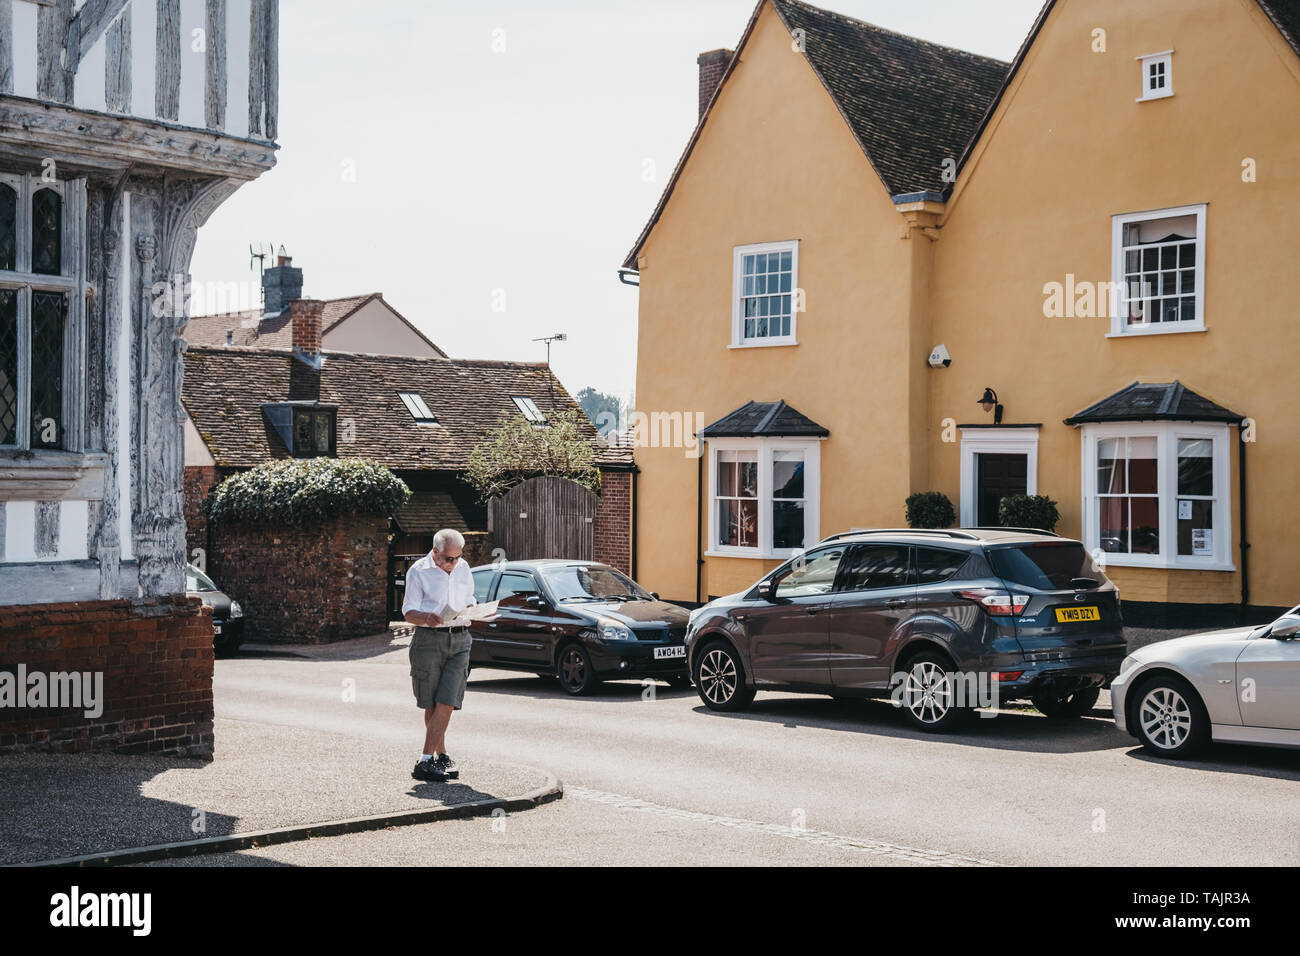 Lavenham, Regno Unito - 19 Aprile 2019: uomo in piedi e la lettura di una mappa nella parte anteriore del cottage colorati a Lavenham, un villaggio nel Suffolk, Inghilterra, famoso per Foto Stock